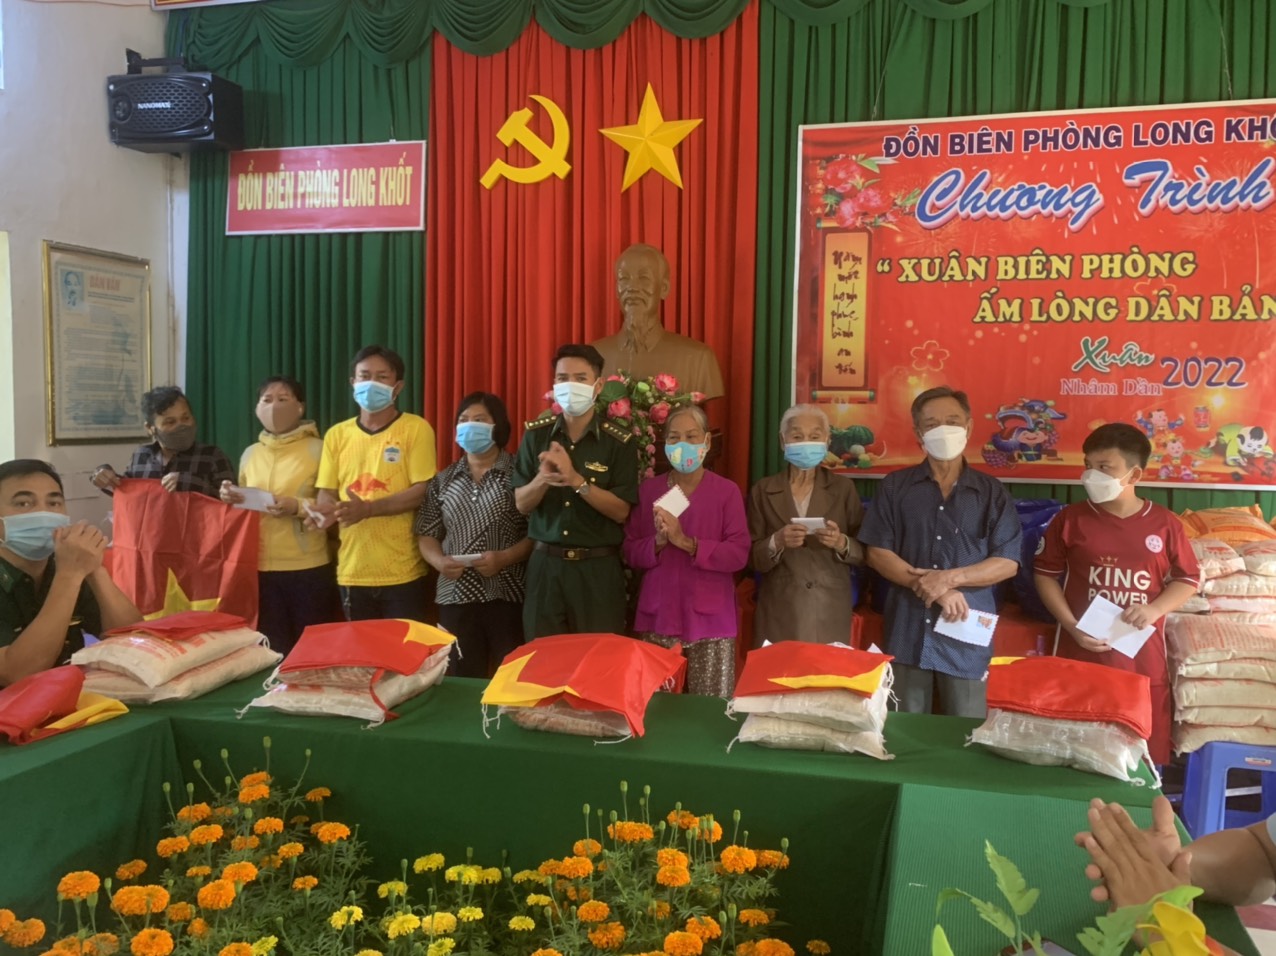 Đồn Biên phòng Long Khốt tặng quà cho người dân trên địa bàn xã Thái Bình Trung